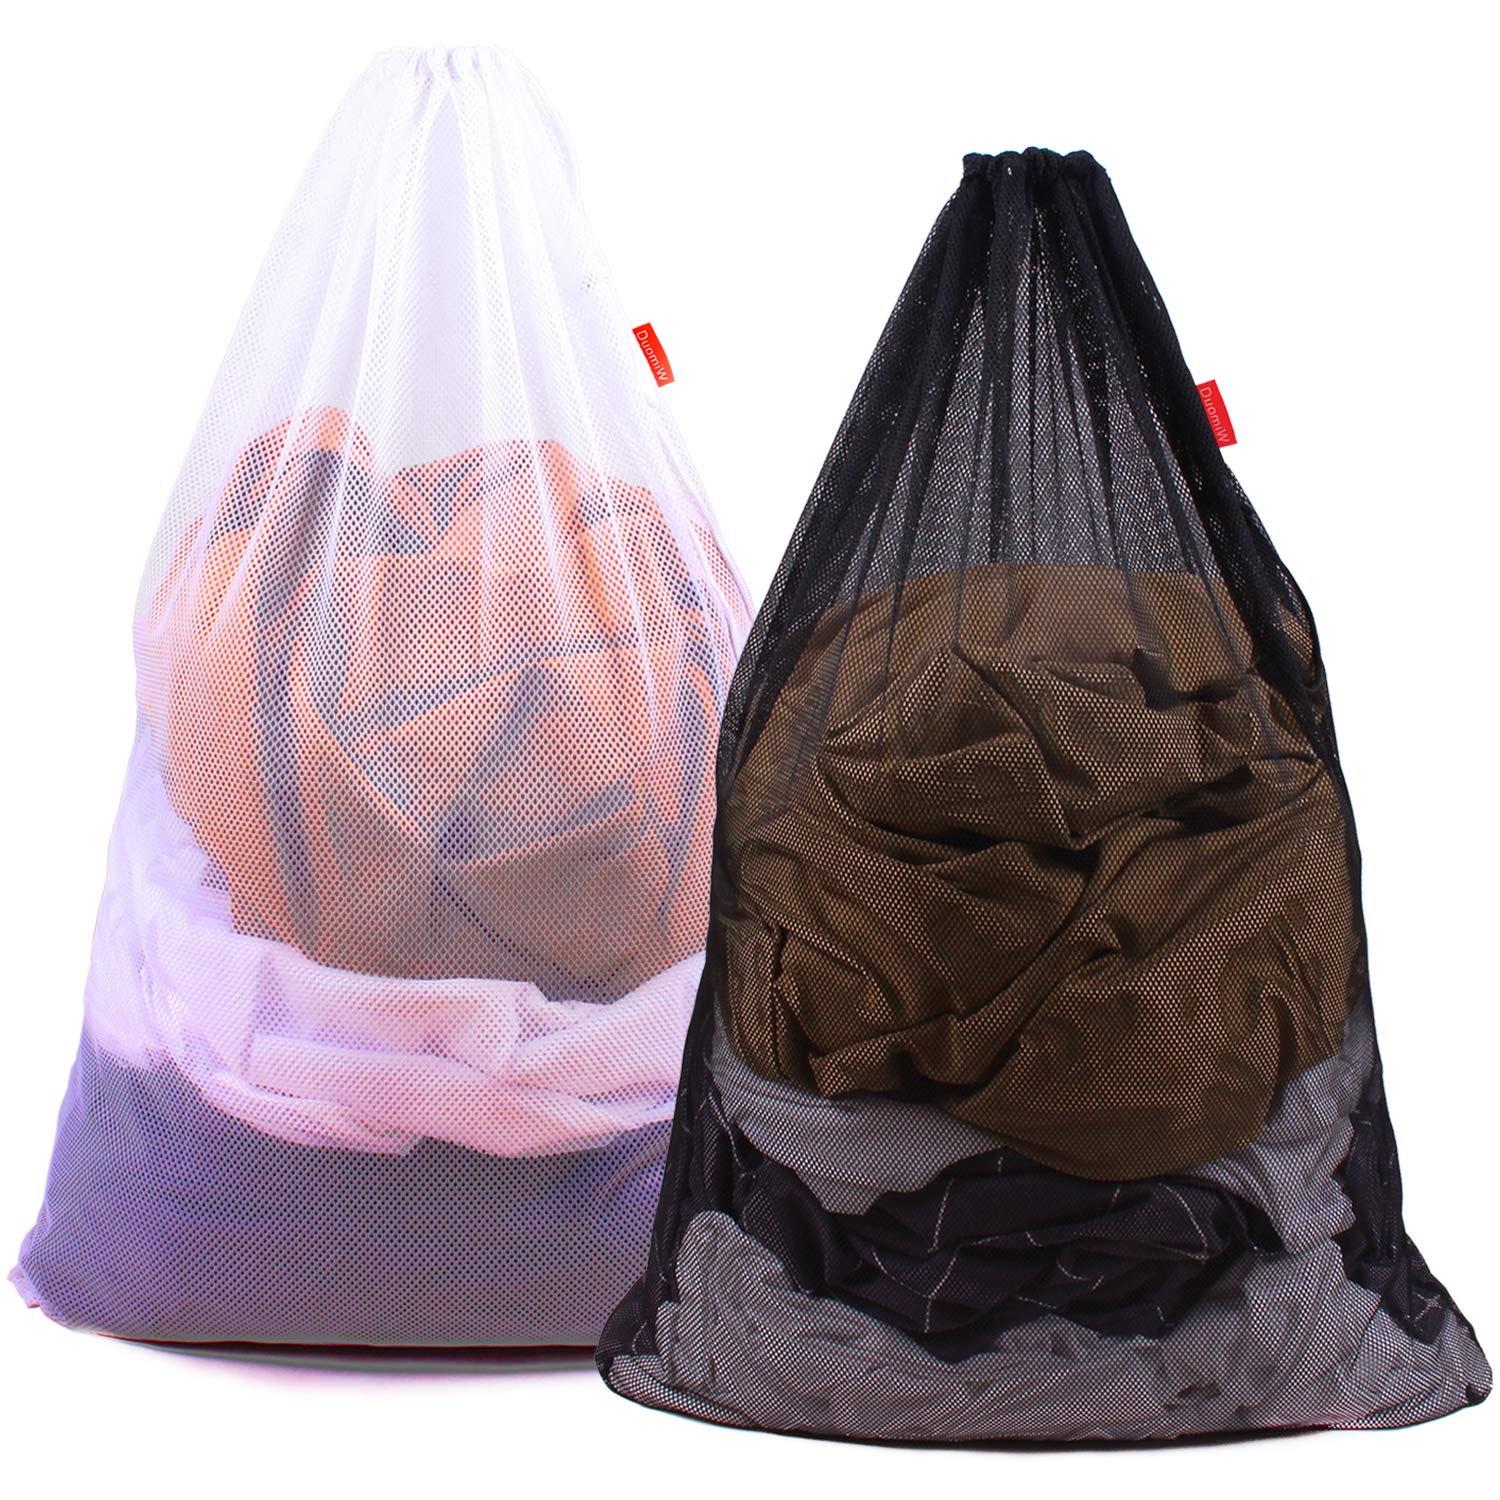 Promotionbag-portable-convenient-easyclean- (4)